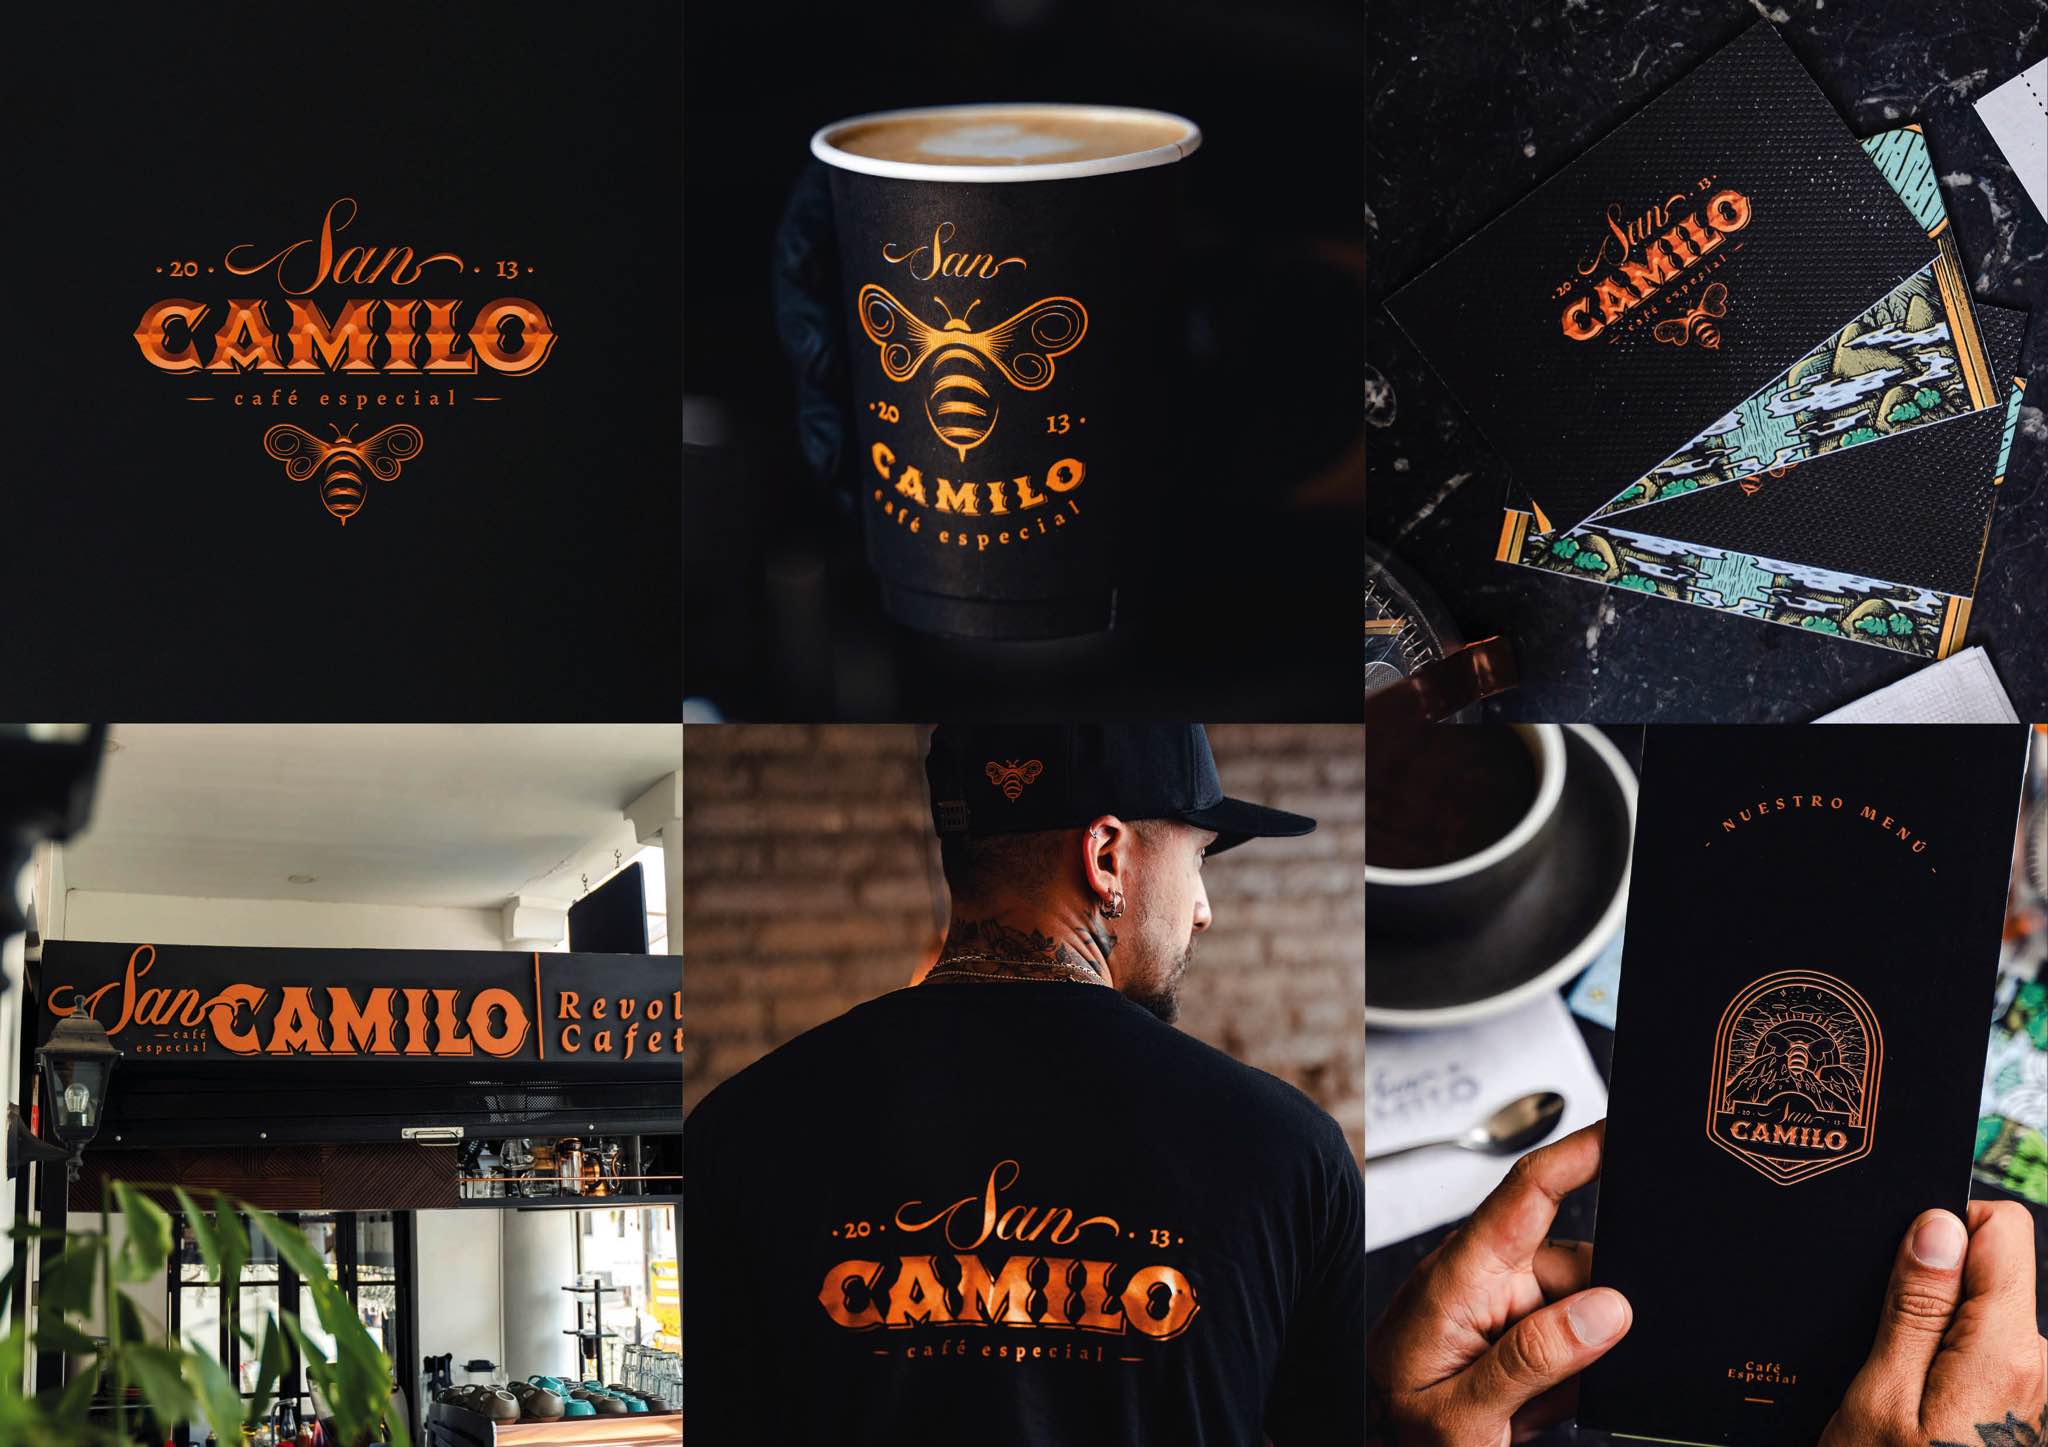 San Camilo - Café Especial Identidad